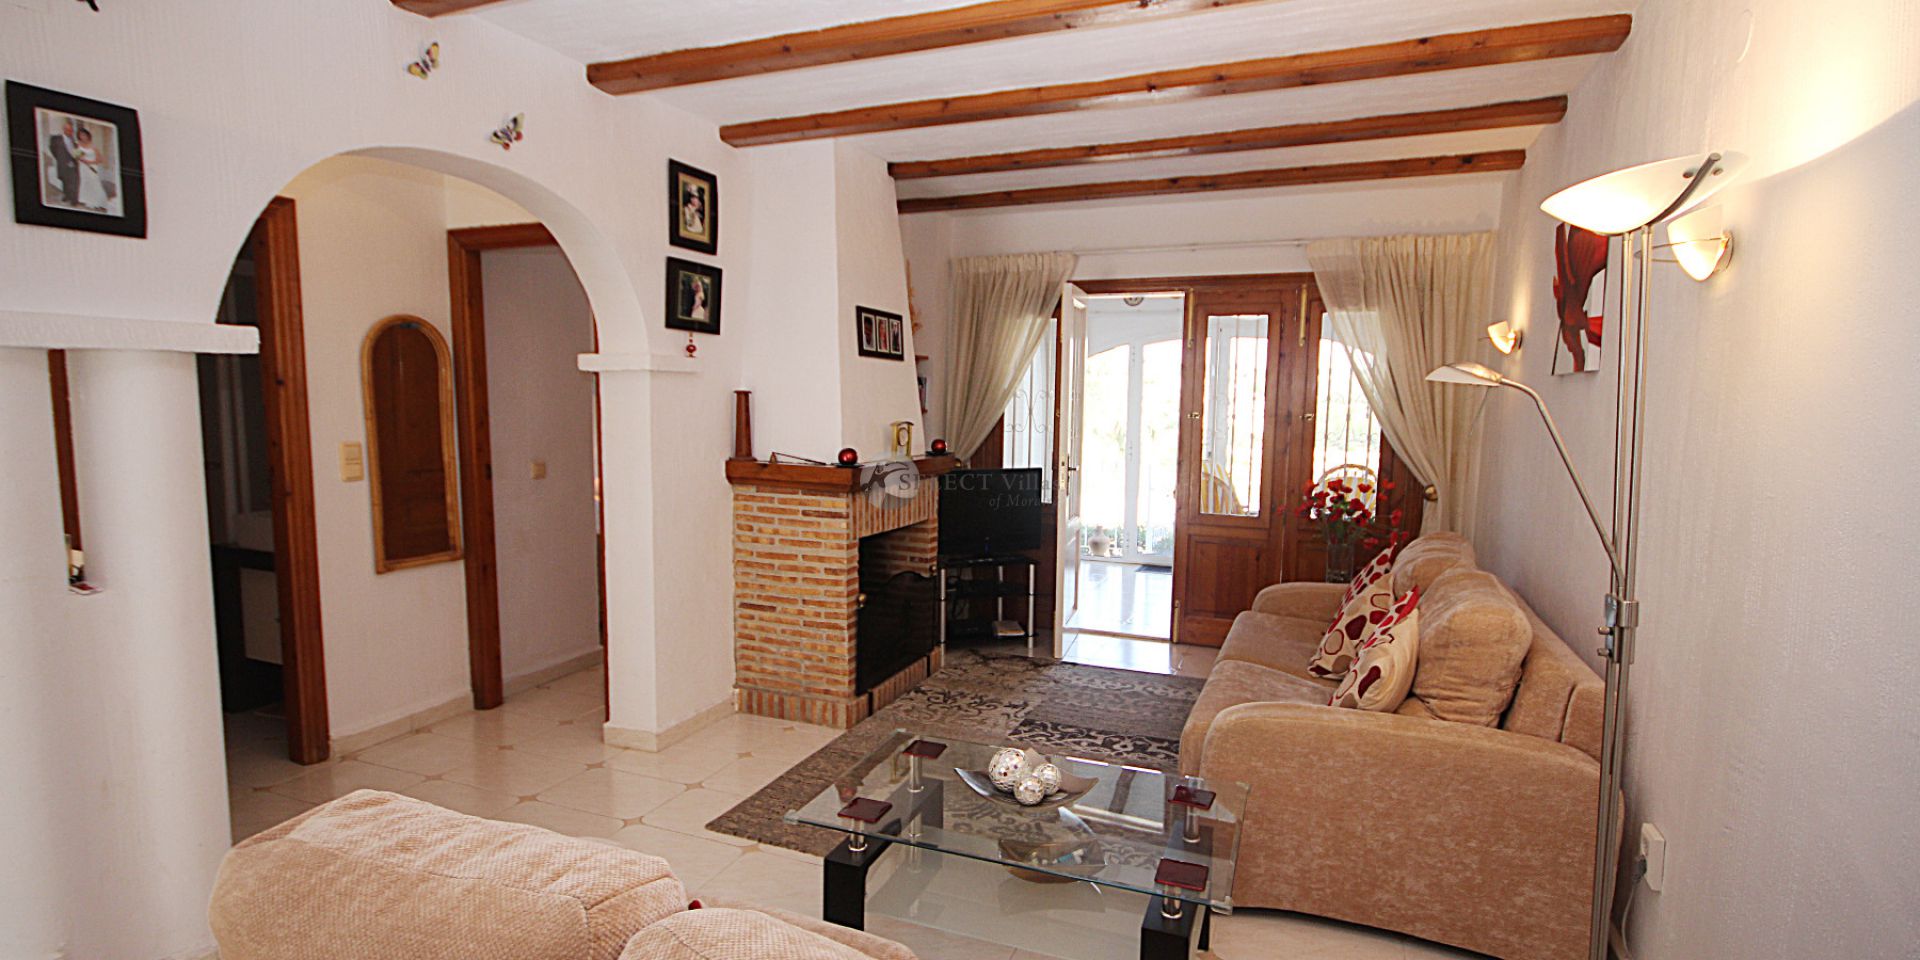 Villa moderna en venta en Moraira